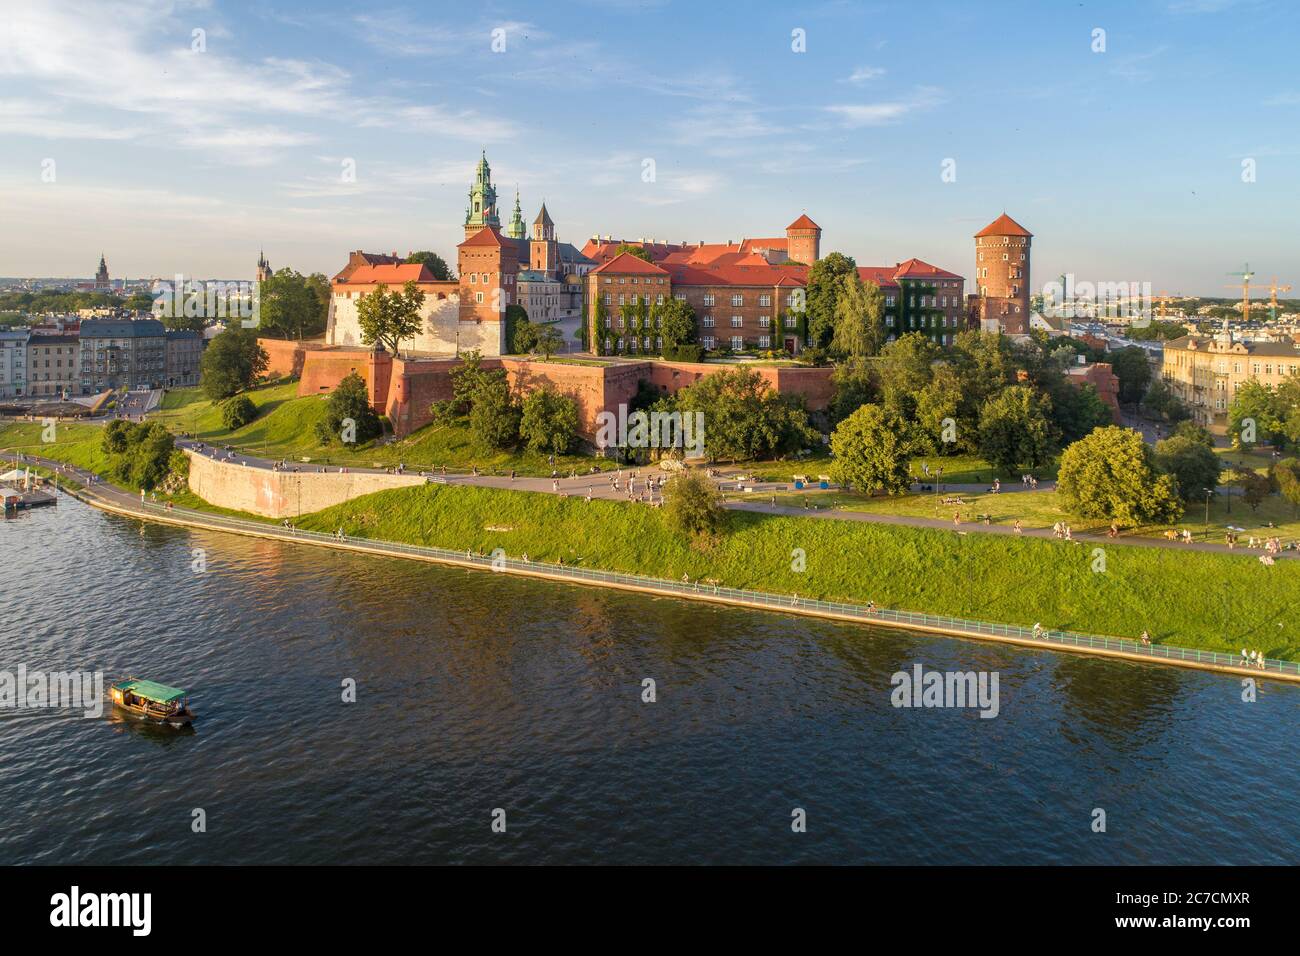 Königliche Wawel-Kathedrale und Schloss in Krakau, Polen. Luftaufnahme bei Sonnenuntergang. Weichsel, Touristenboot, Flussufer mit Park. Promenade und Spaziergang Stockfoto